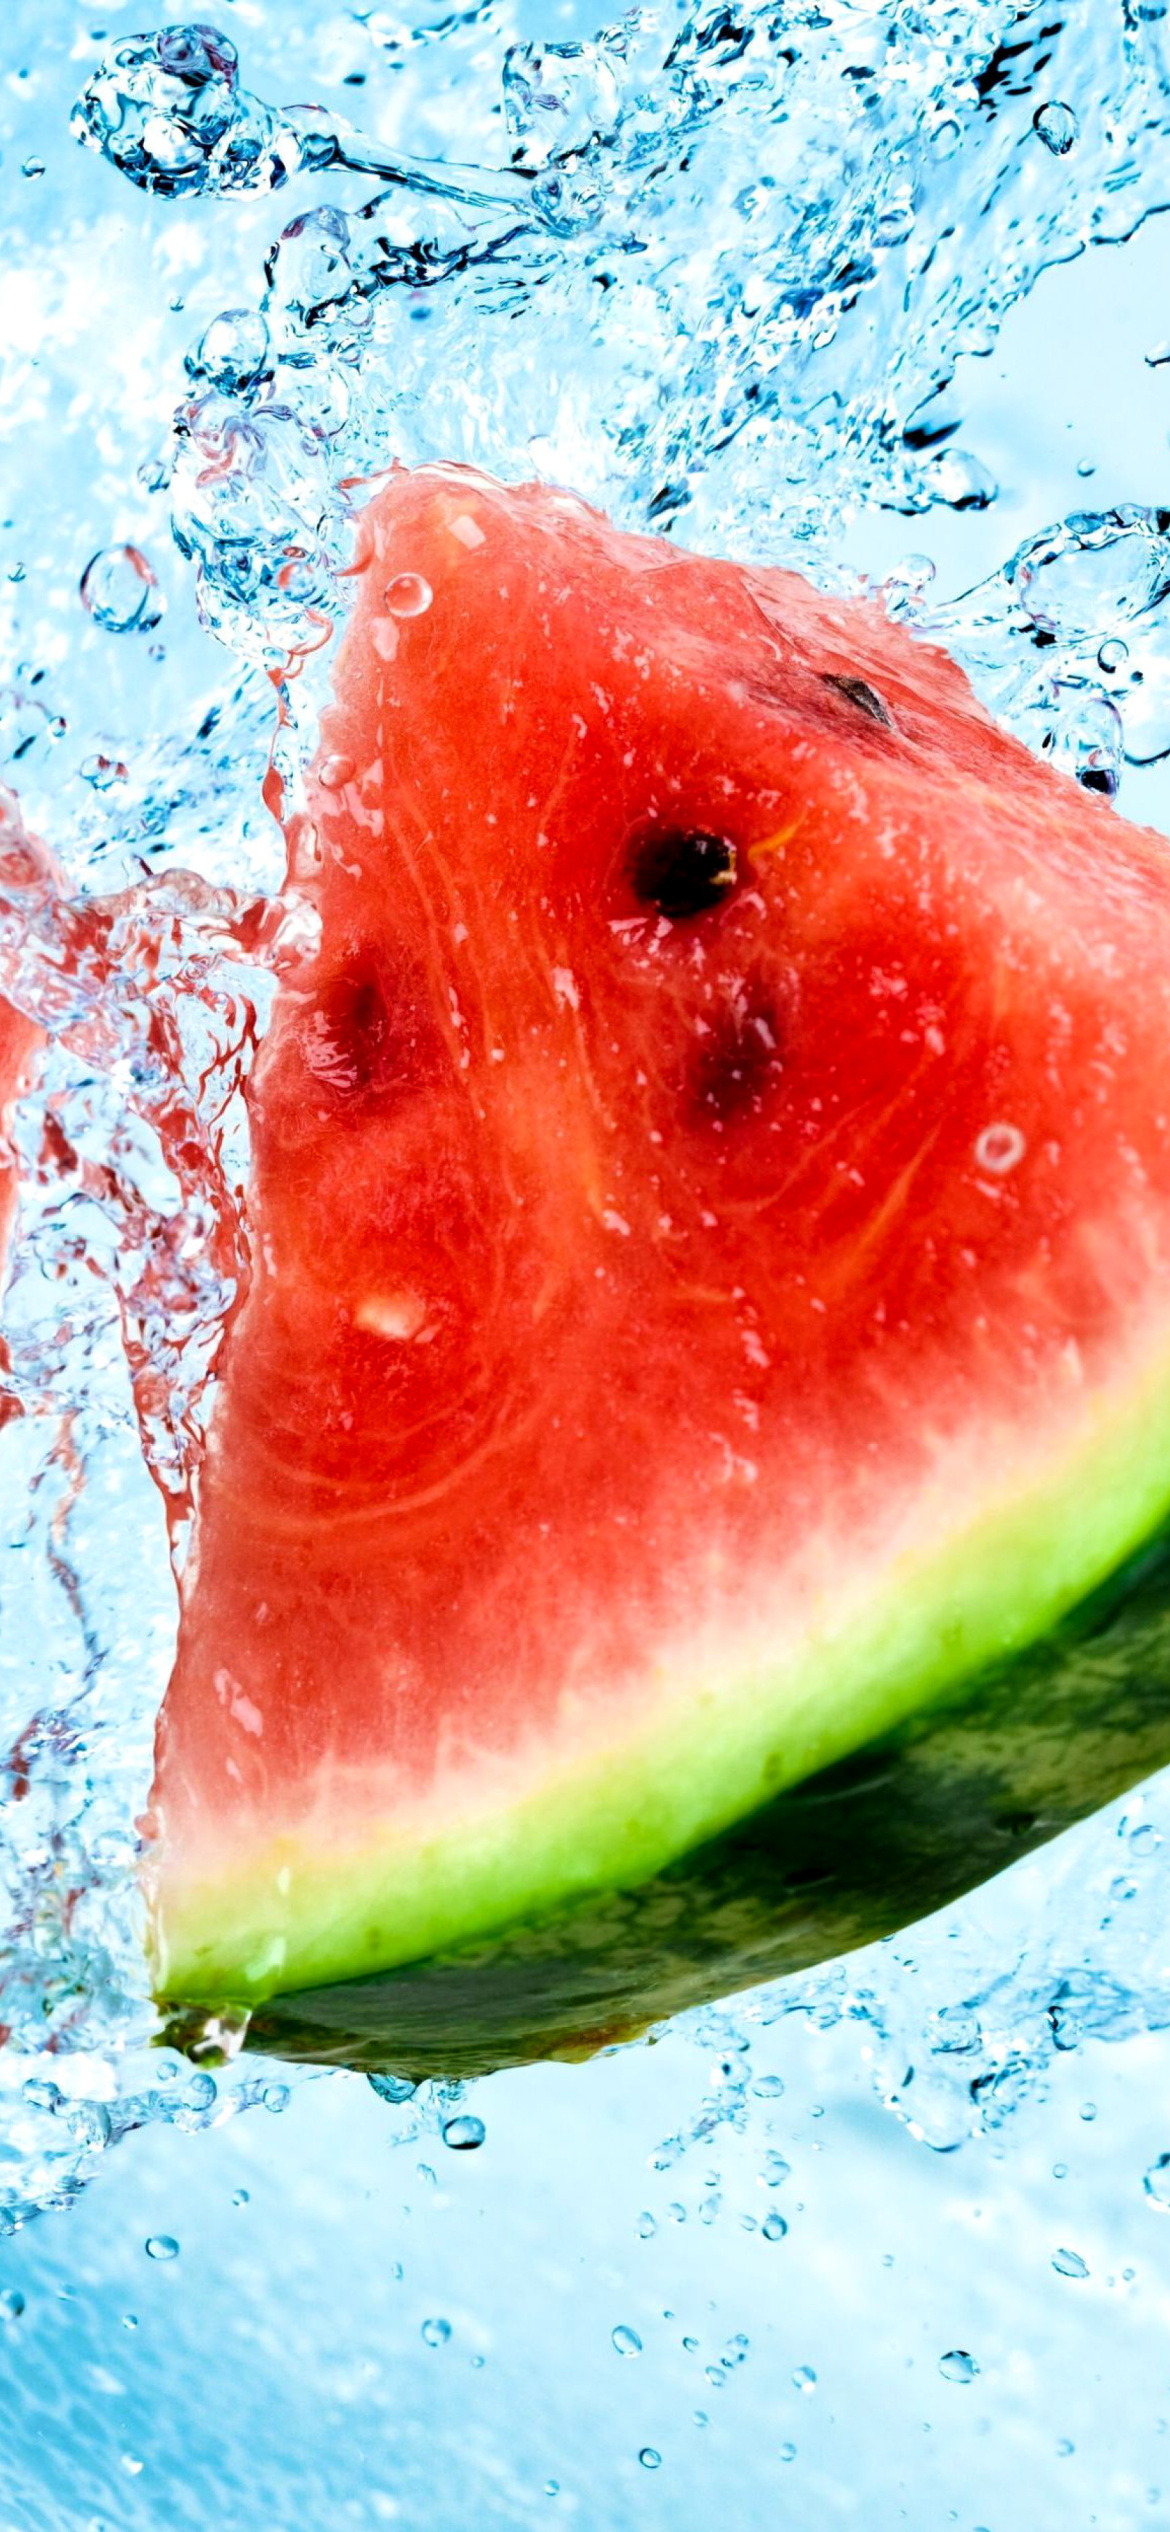 Fondo de pantalla Watermelon Triangle Slices 1170x2532